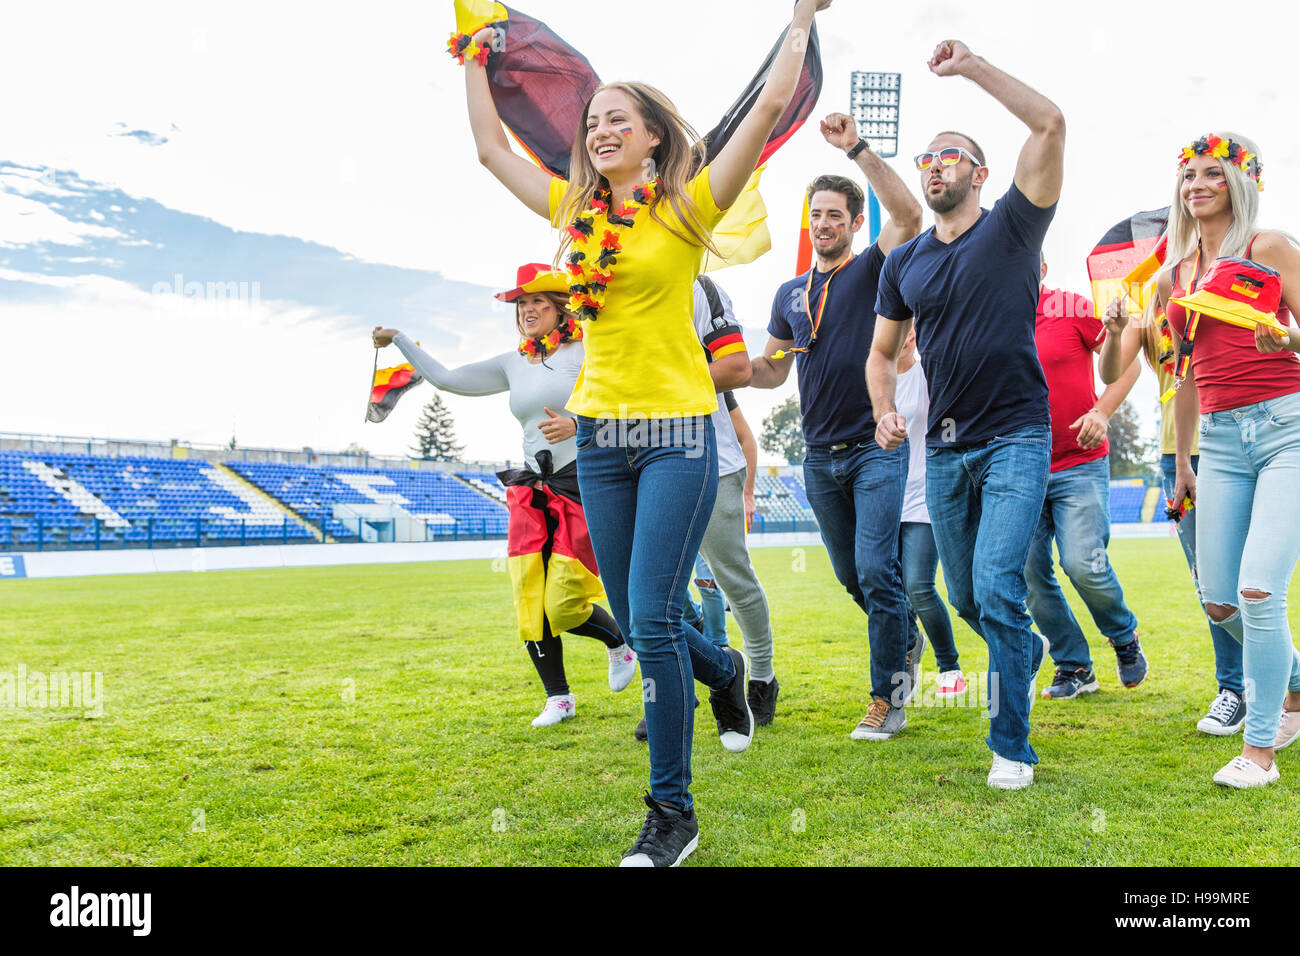 Grupo de aficionados al fútbol se ejecutan en campo de fútbol Foto de stock